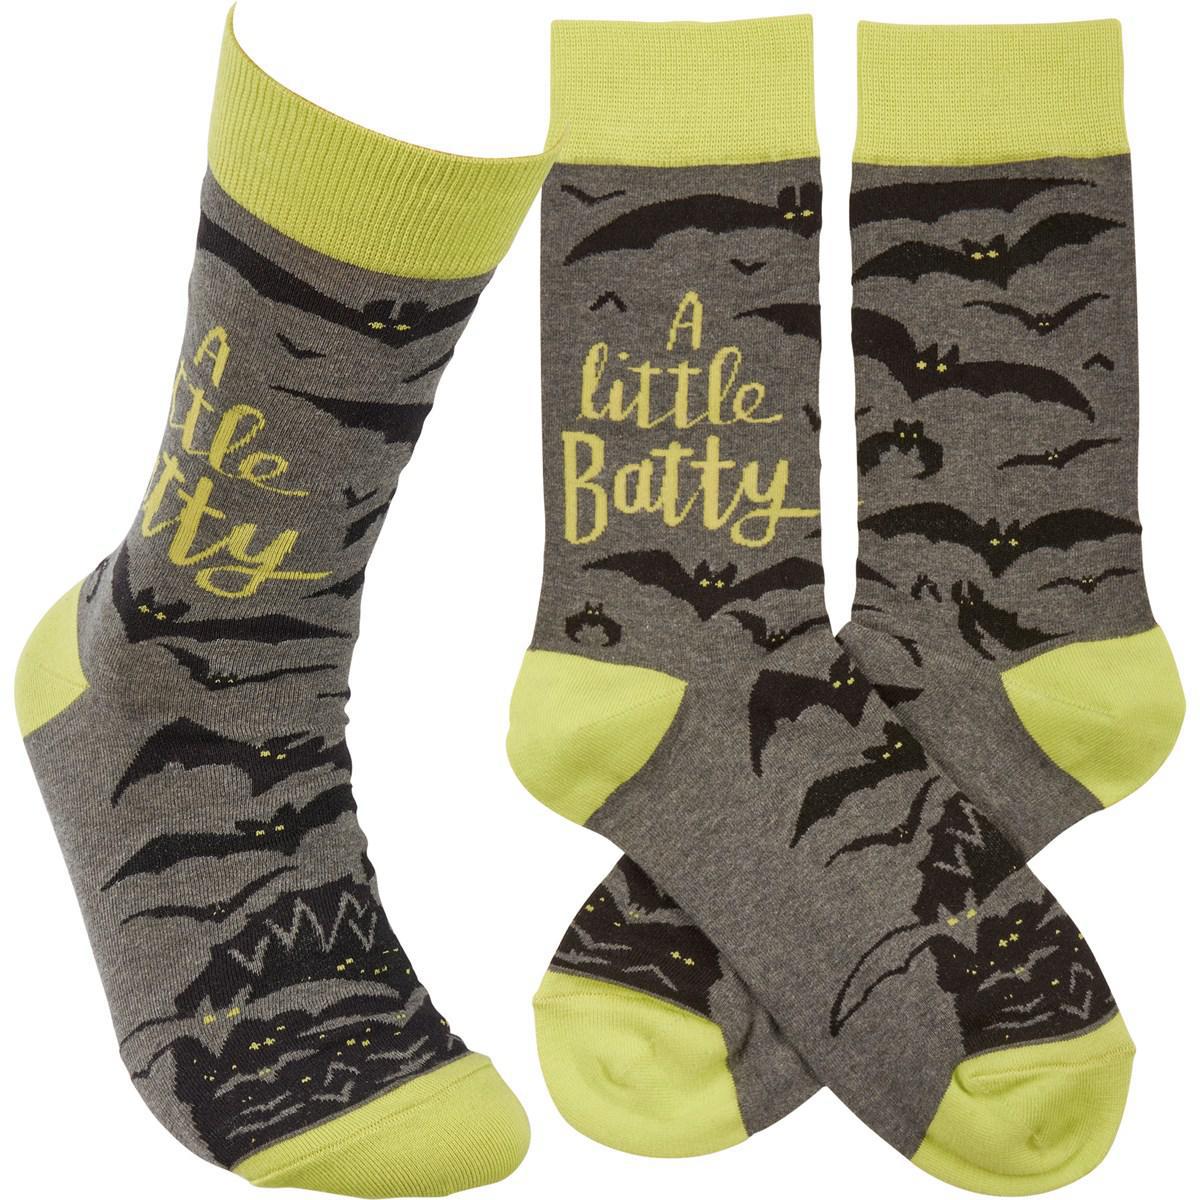 A Little Batty Socks